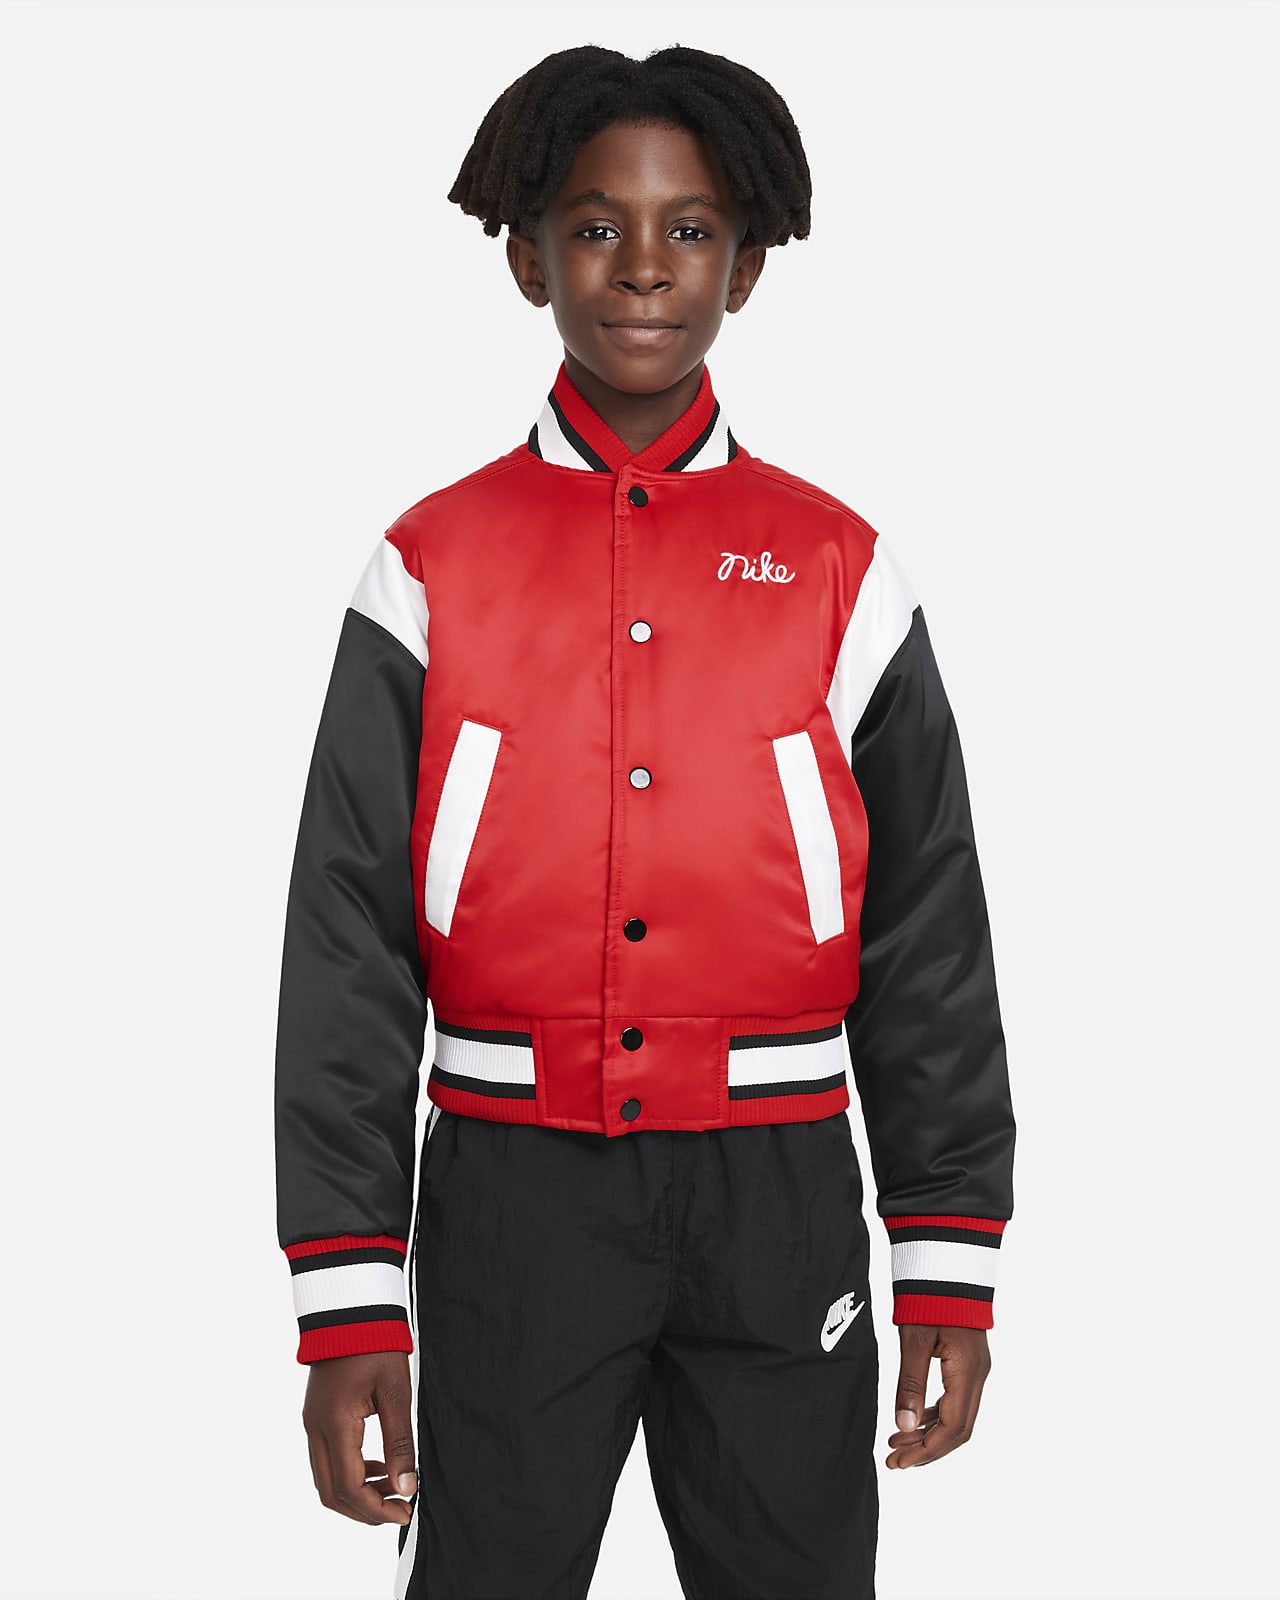 Nike Culture of Basketball Older Kids' (Boys') Jacket